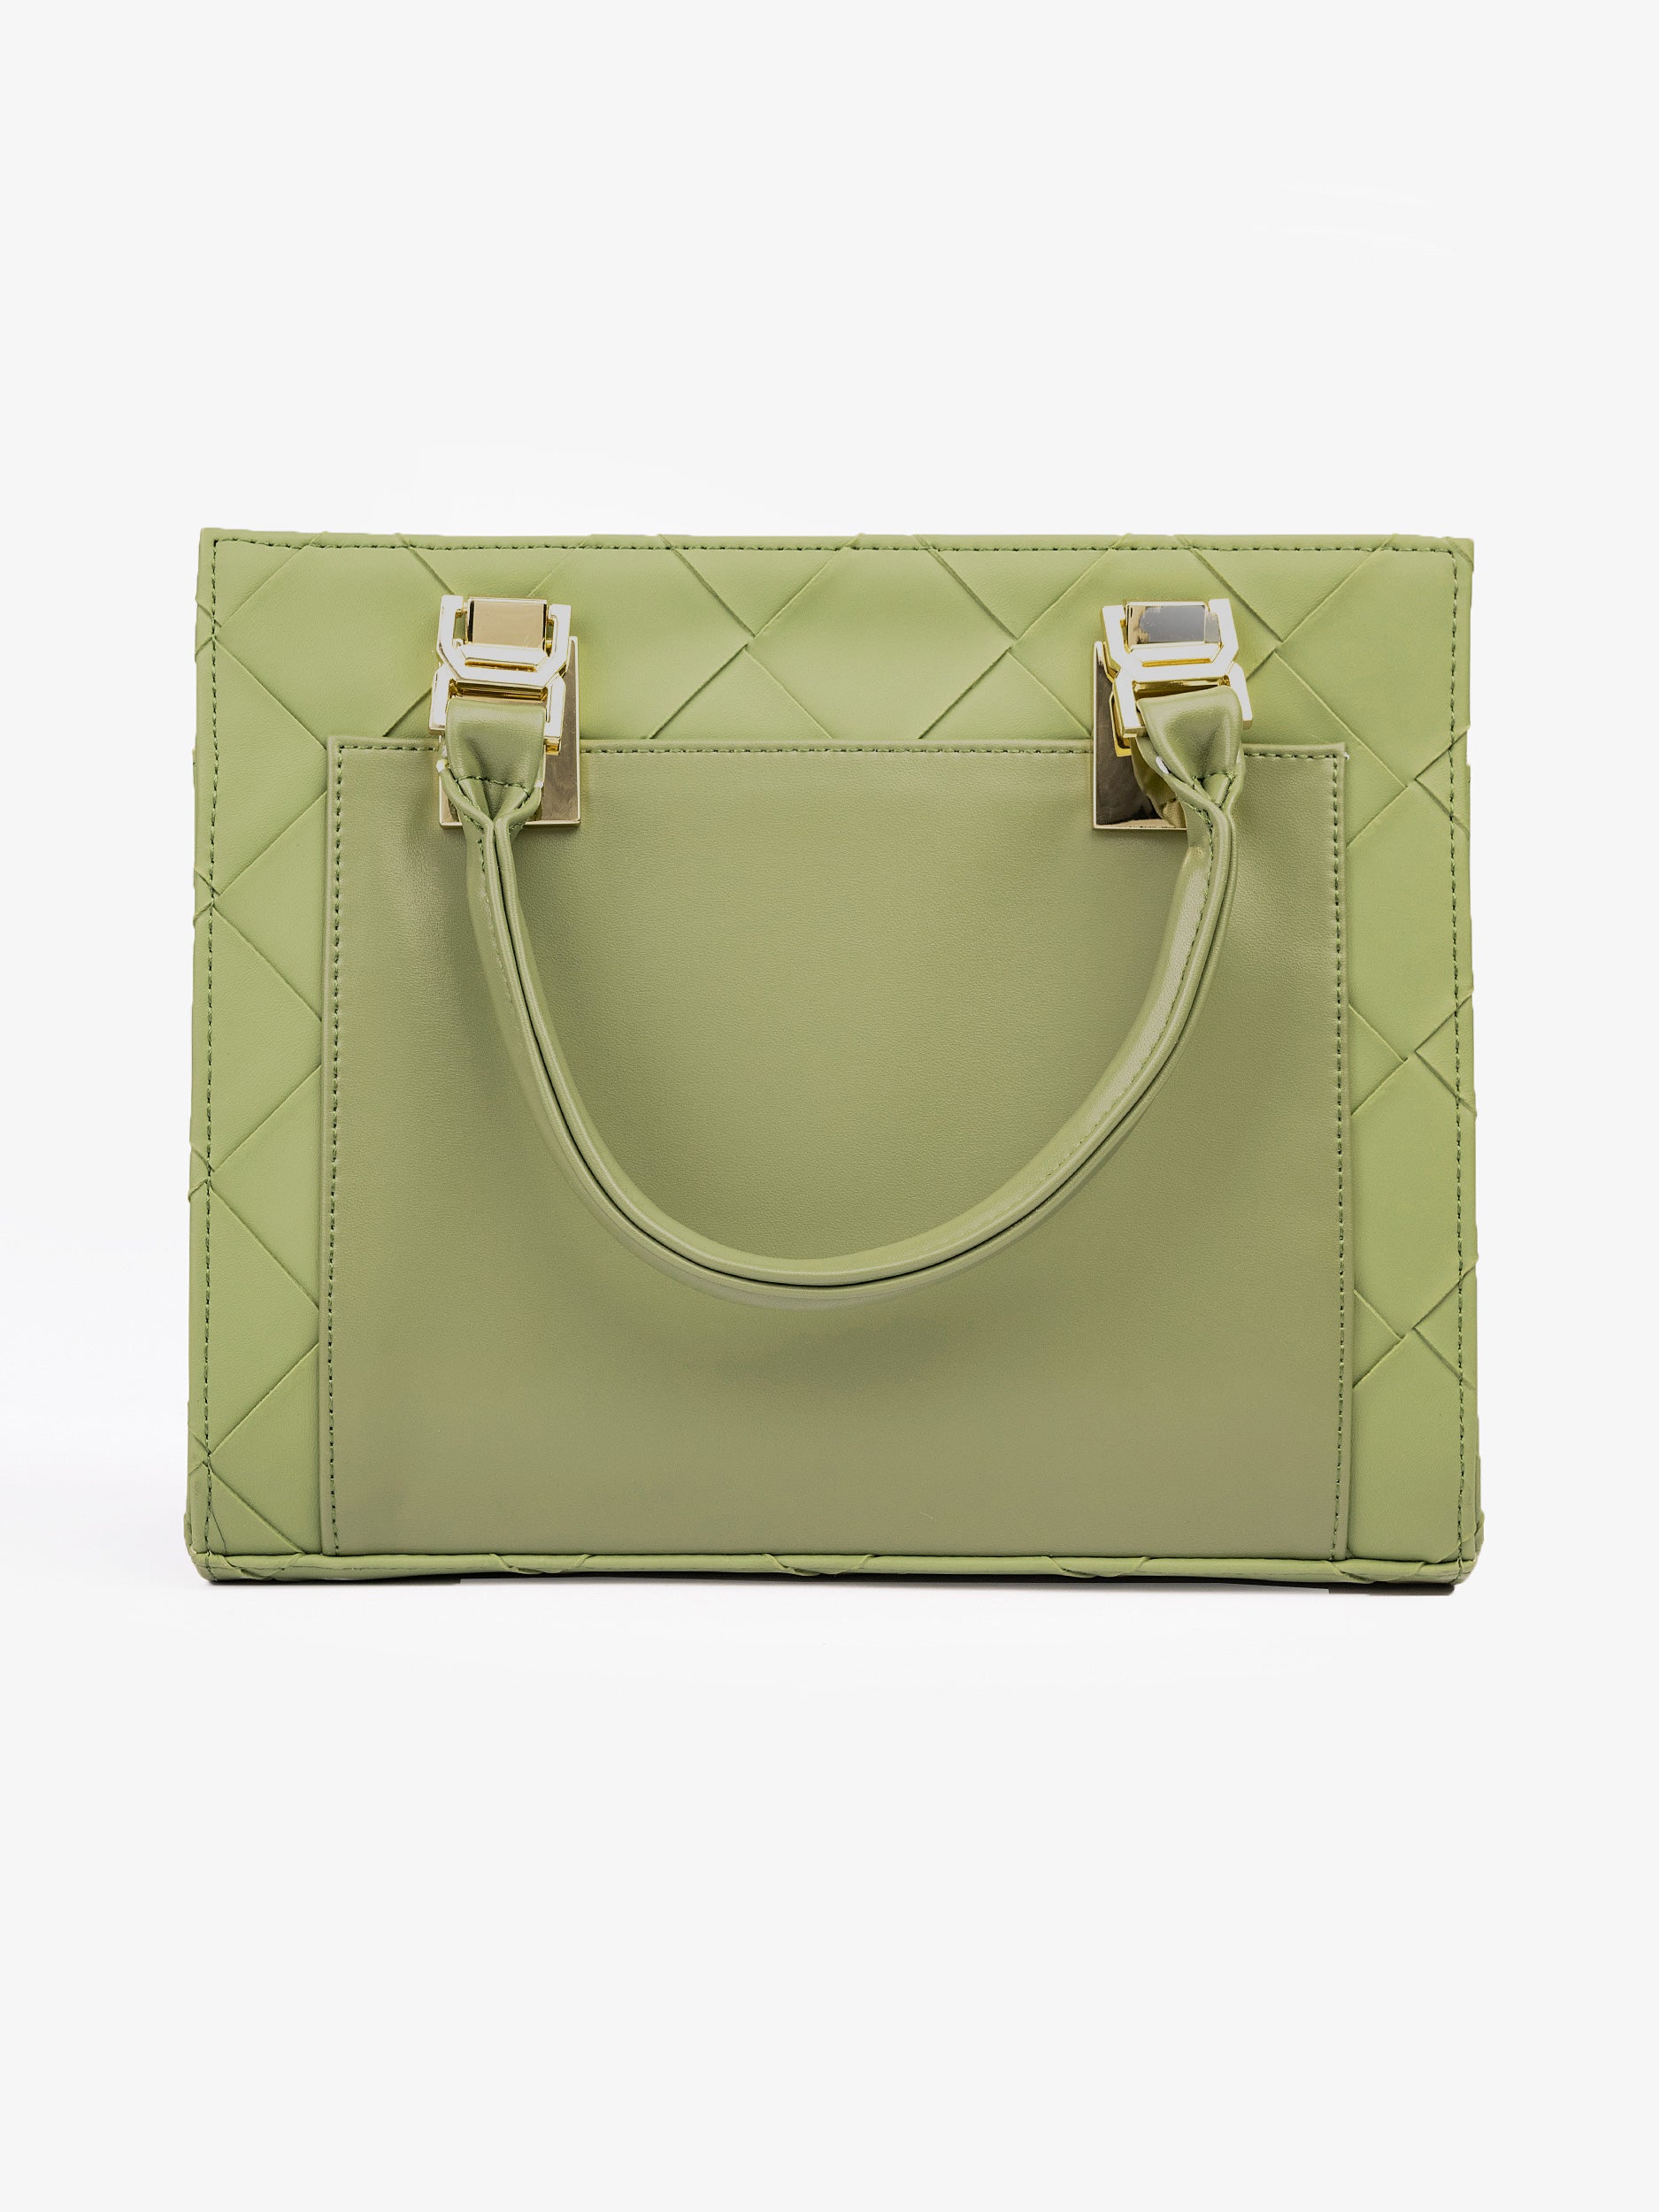 criss-cross-patterned-handbag